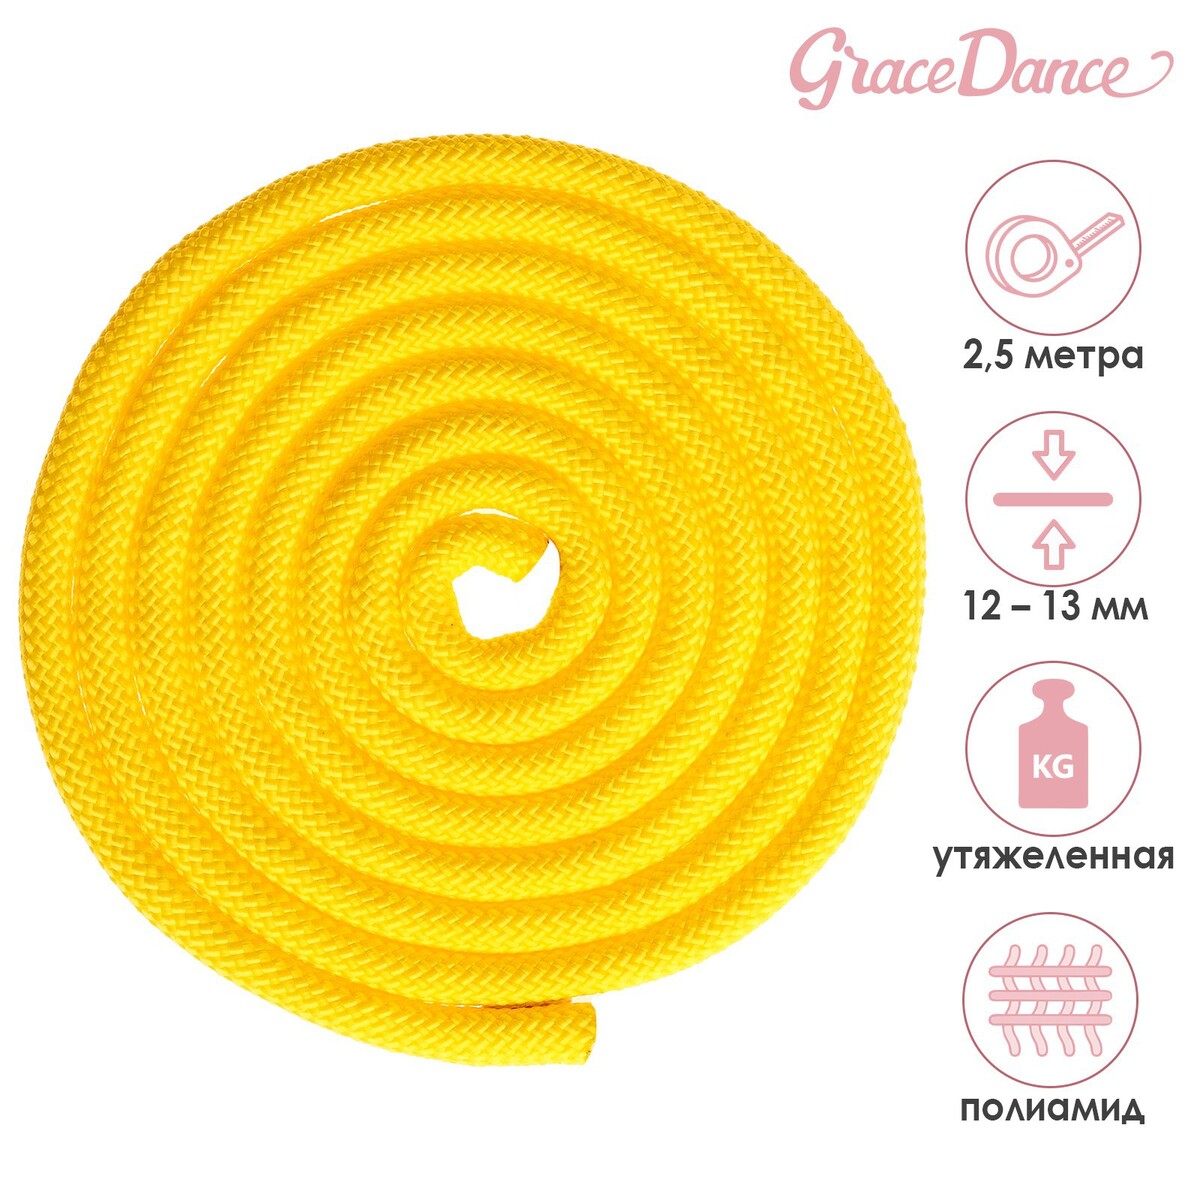 Скакалка для художественной гимнастики утяжеленная grace dance, 2,5 м, цвет желтый скакалка для художественной гимнастики grace dance 3 м желтый